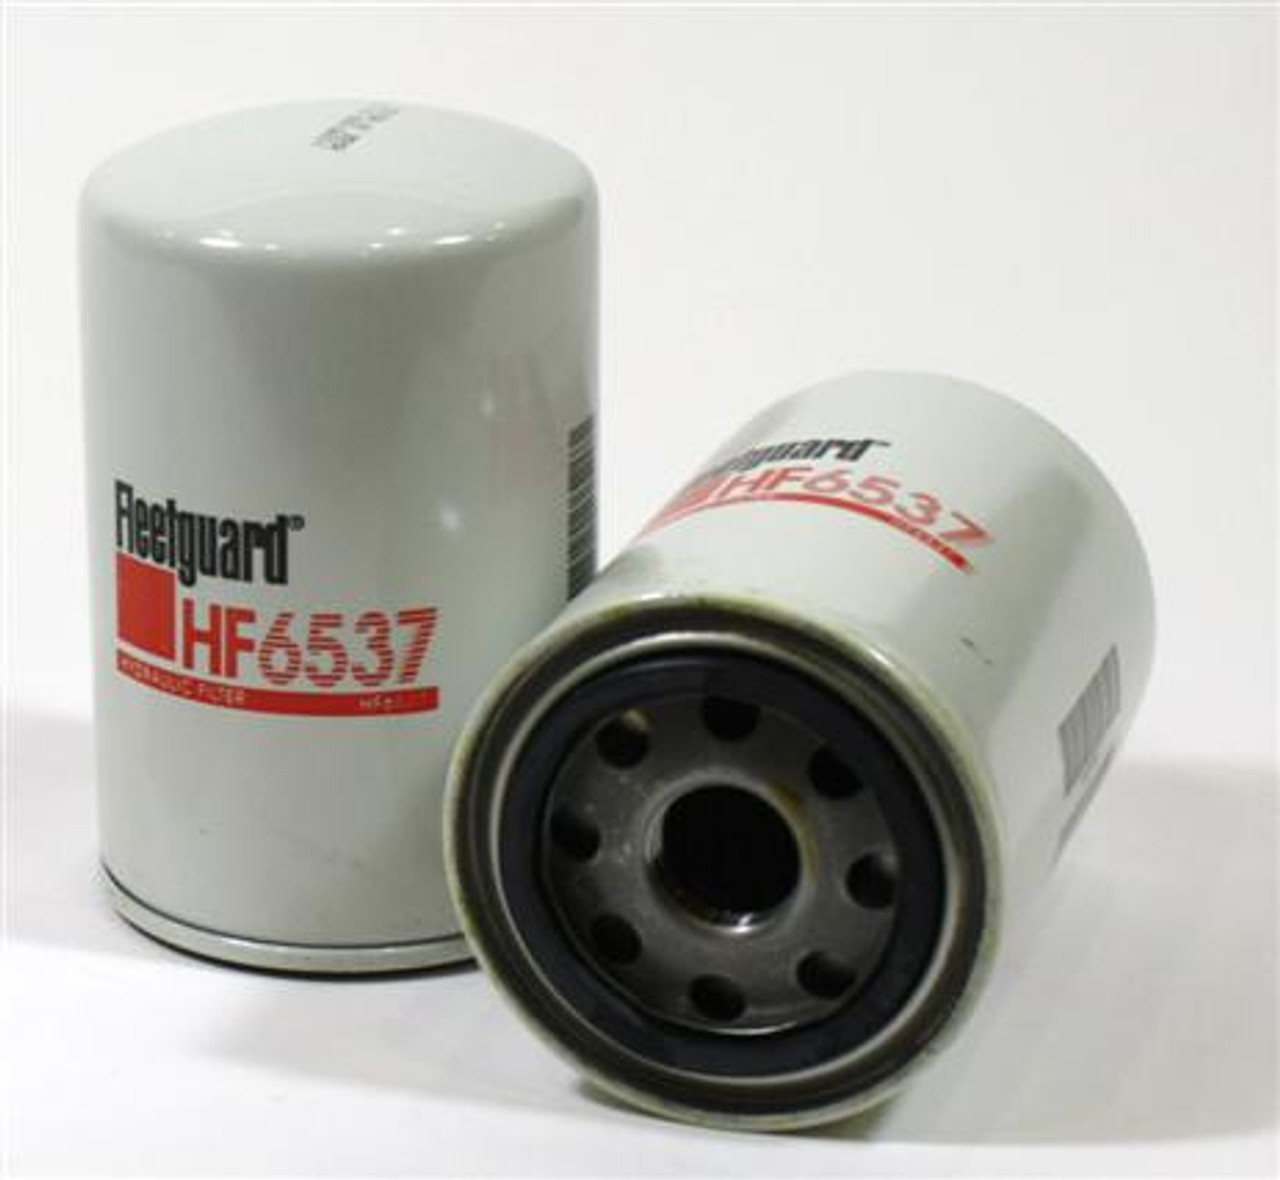 HF6535: Fleetguard Hydraulic Filter